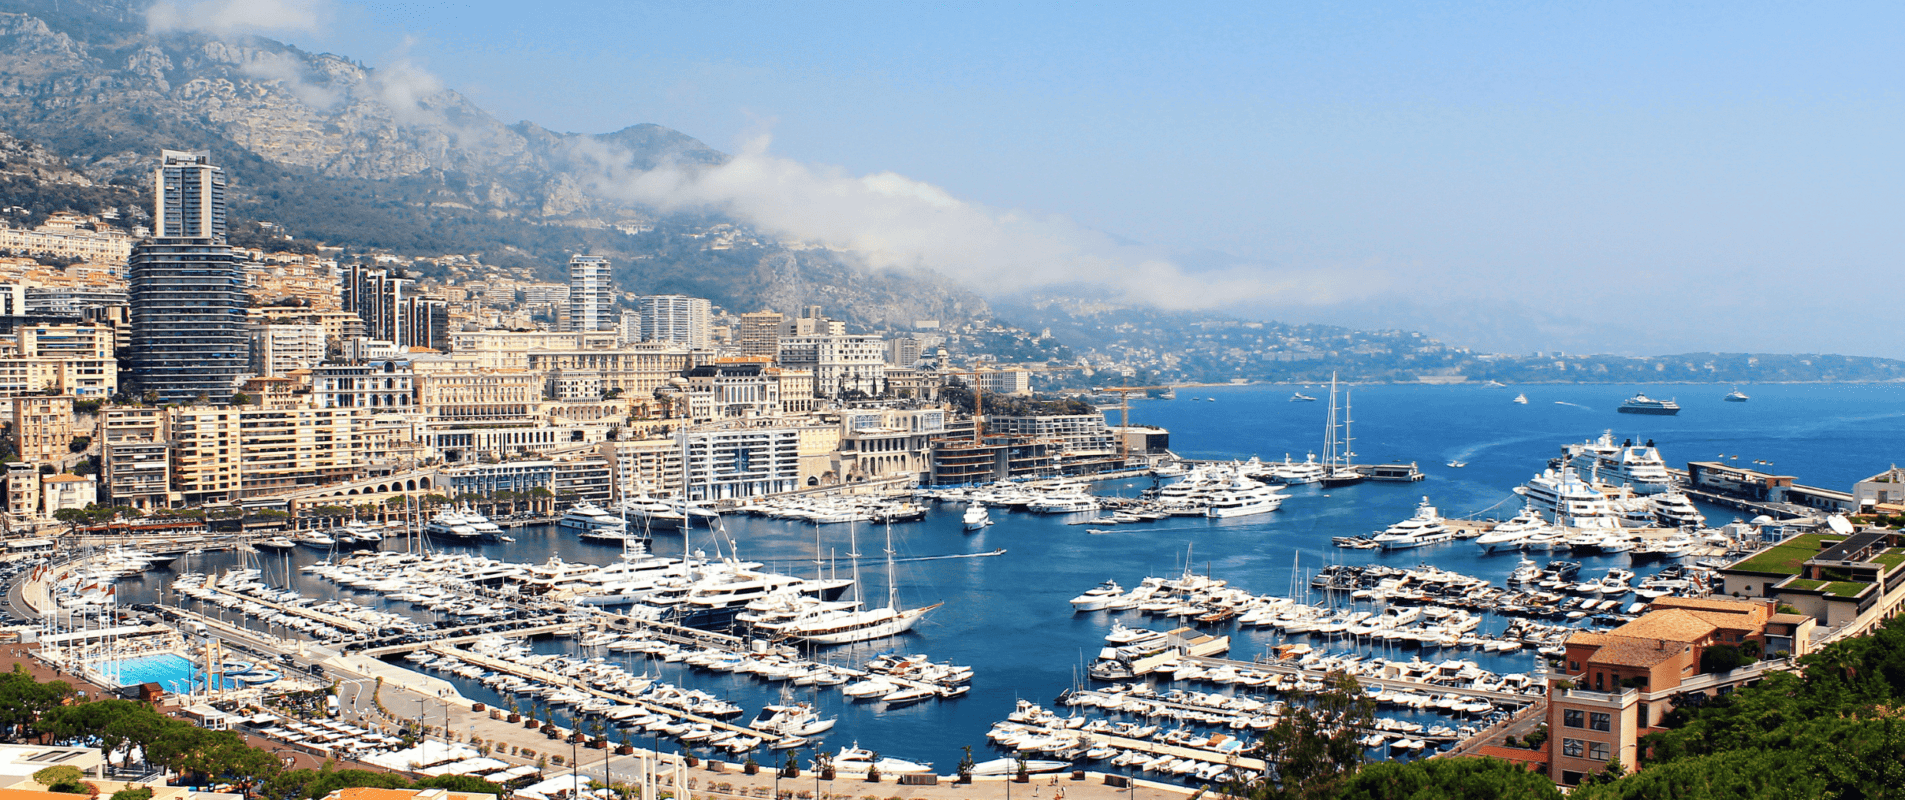 Bannière de l'accueil - Vue du port de Monaco